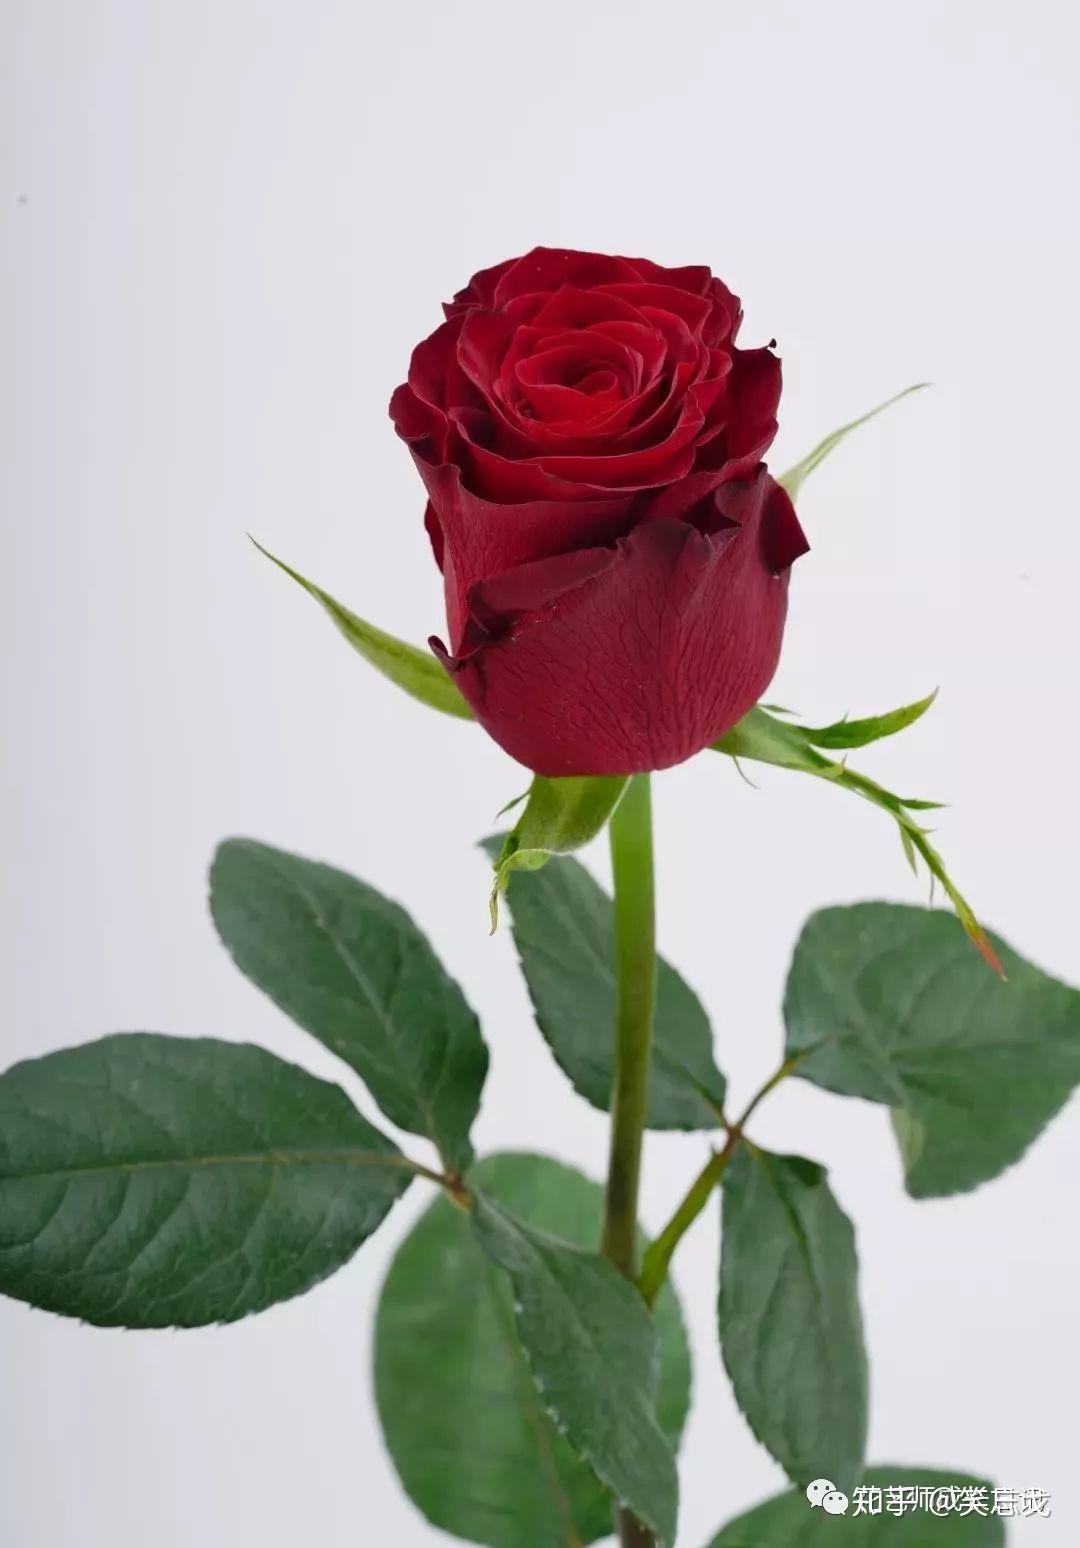 夏日里的红玫瑰[原创] - 绝美图库 - 华声论坛